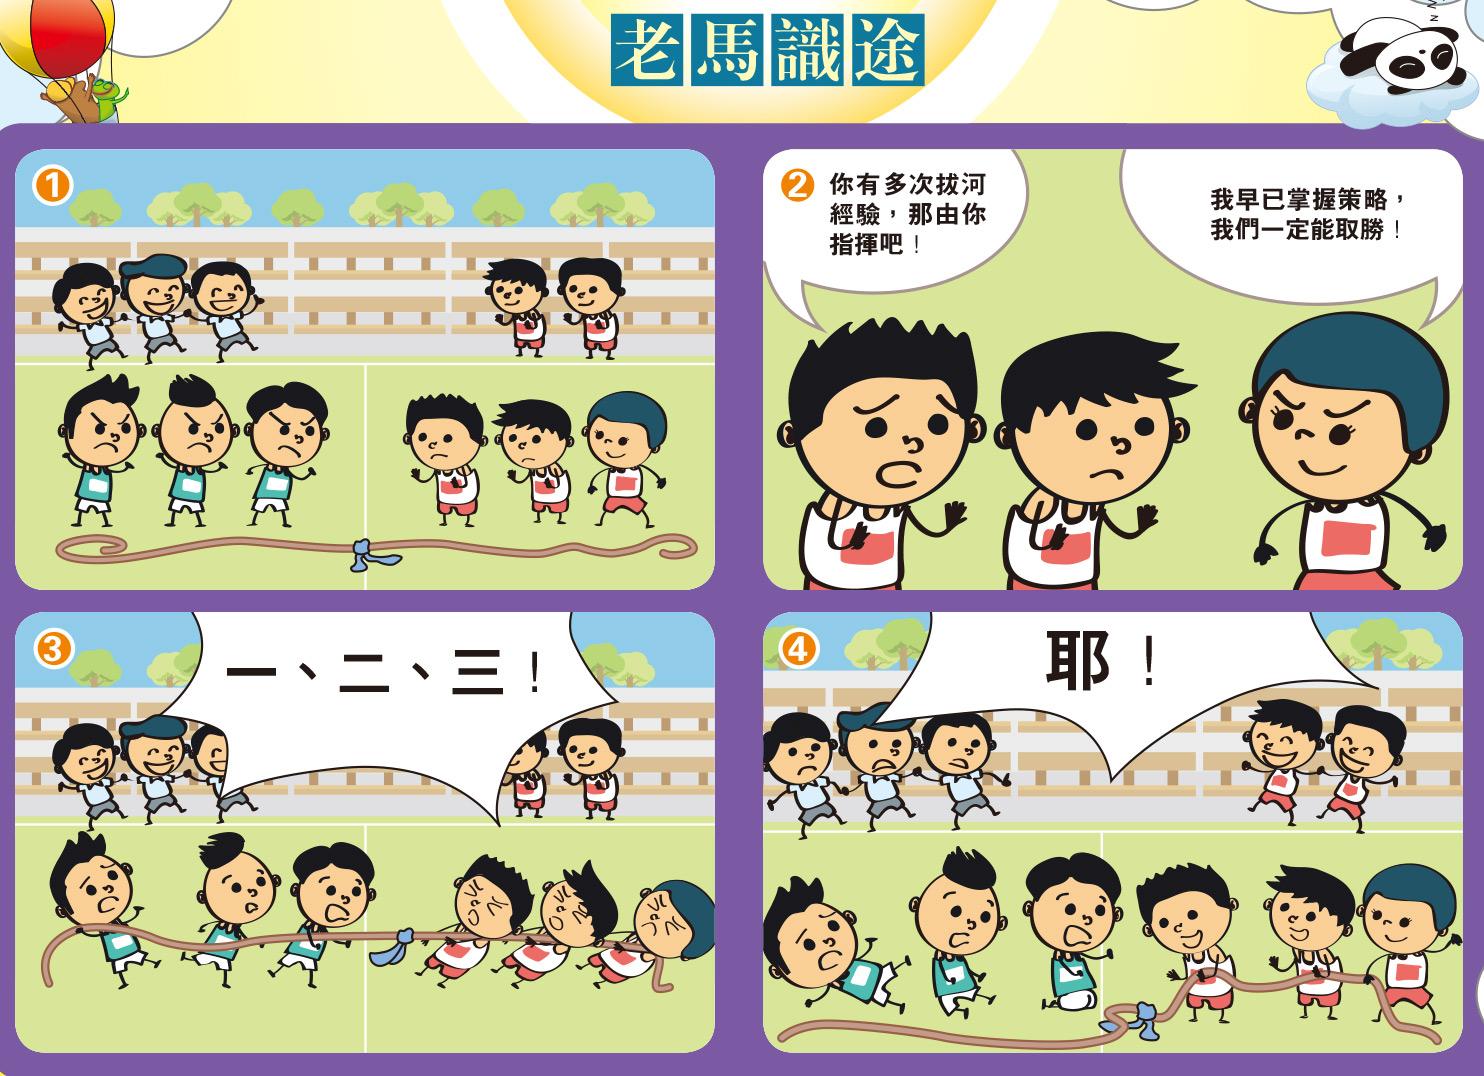 【學中文】如何將成語老馬識途教育給學生